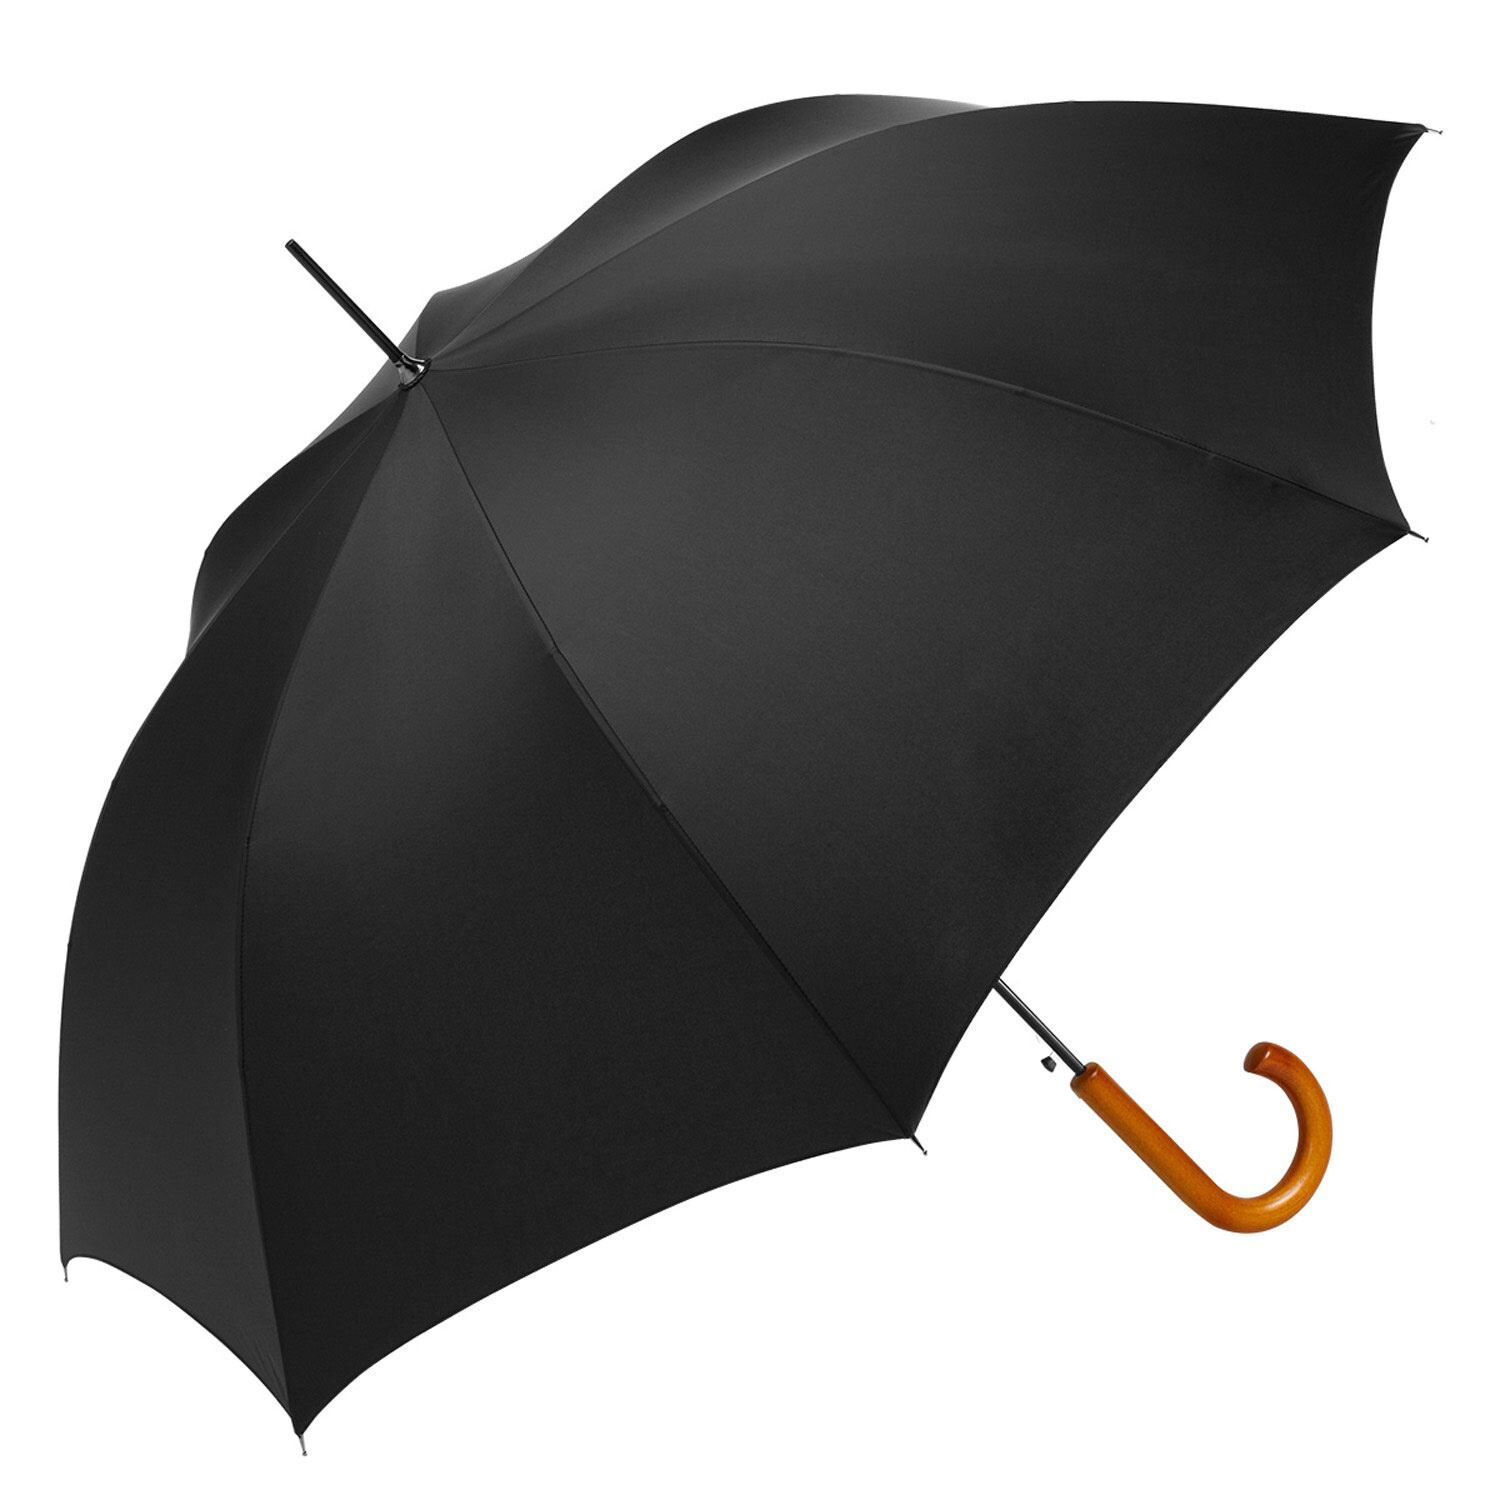 Custom Branded ShedRain Umbrellas - Black